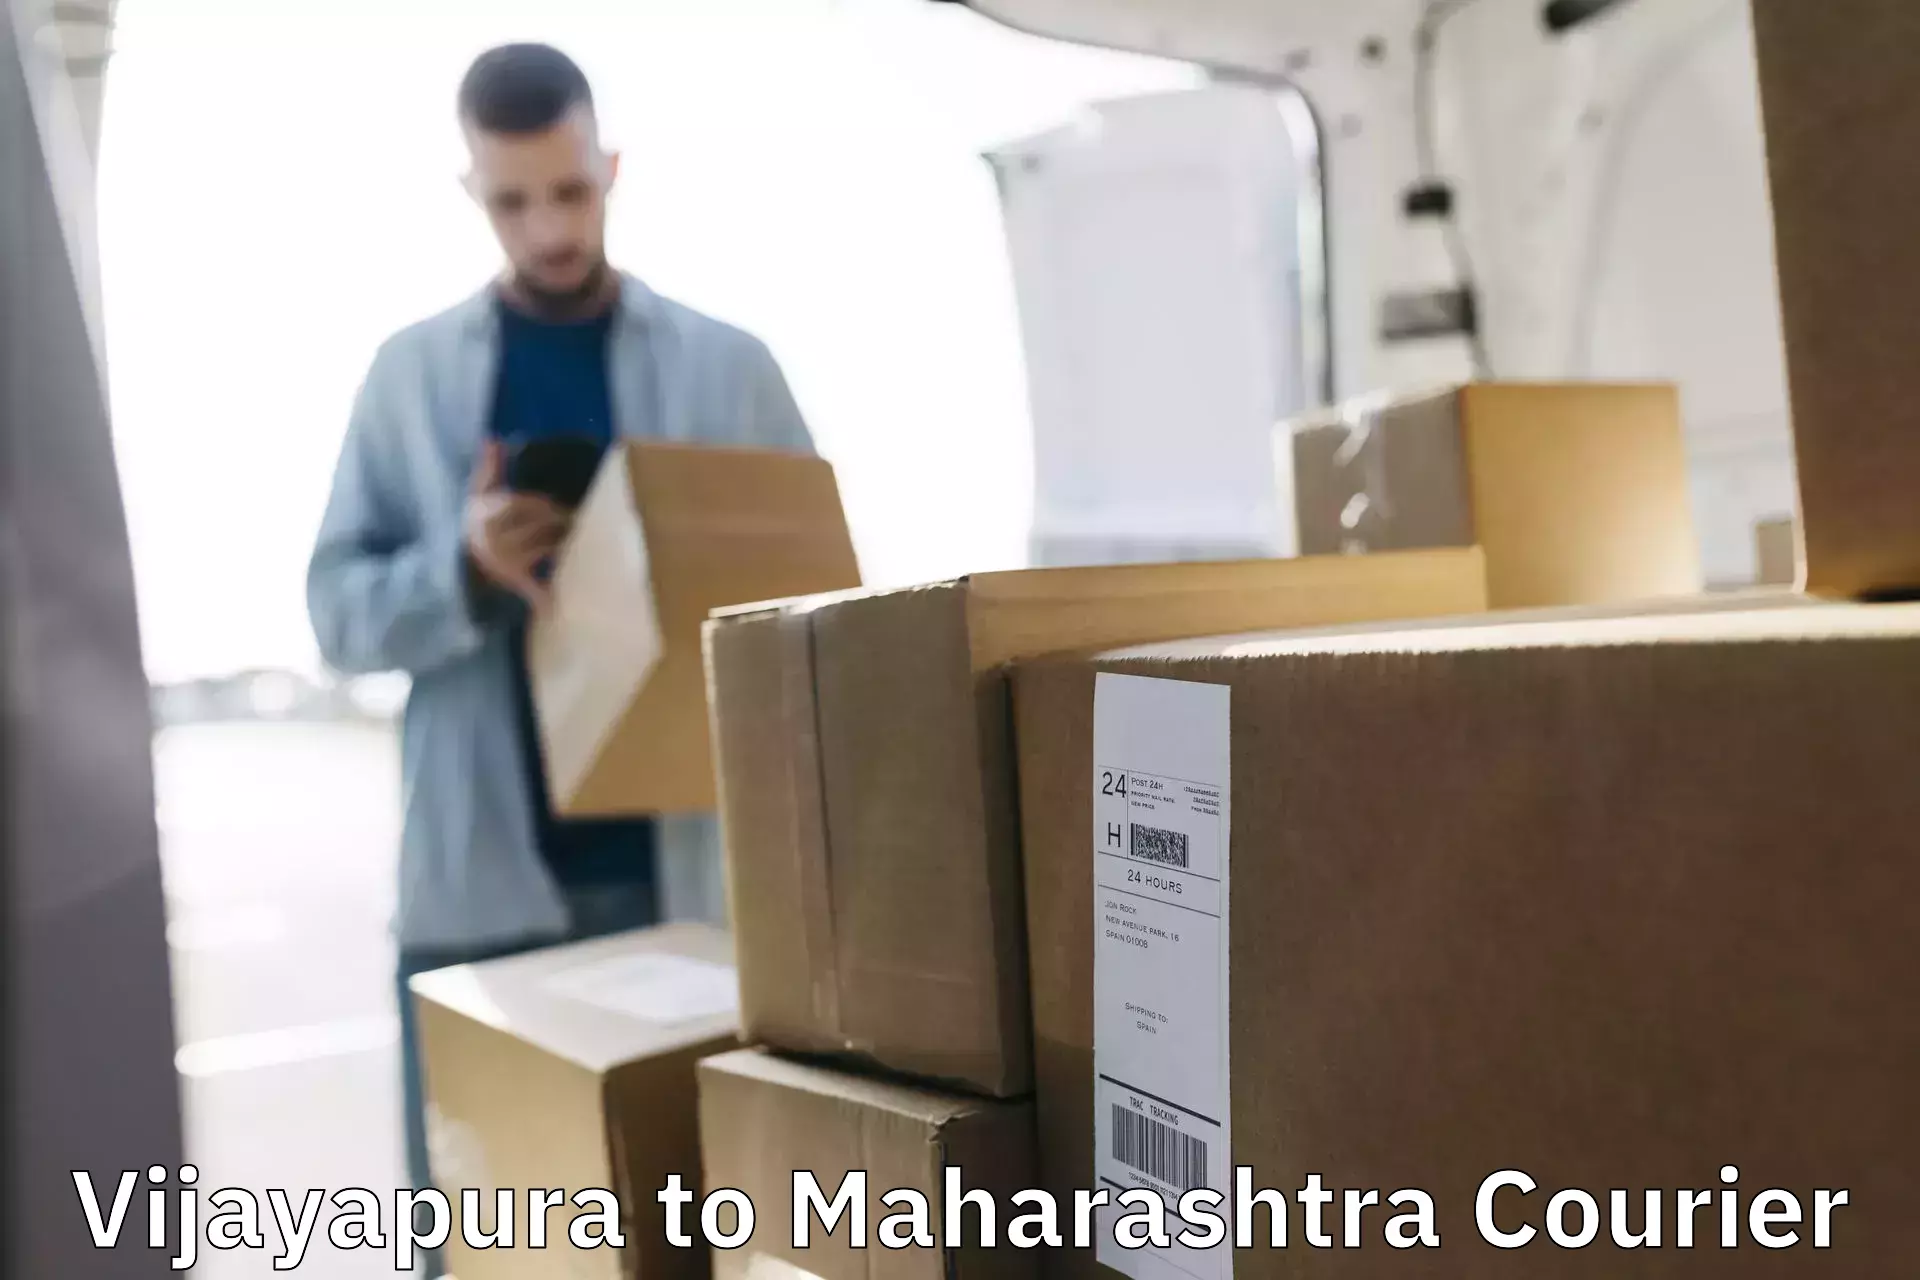 Professional parcel services Vijayapura to Maharashtra